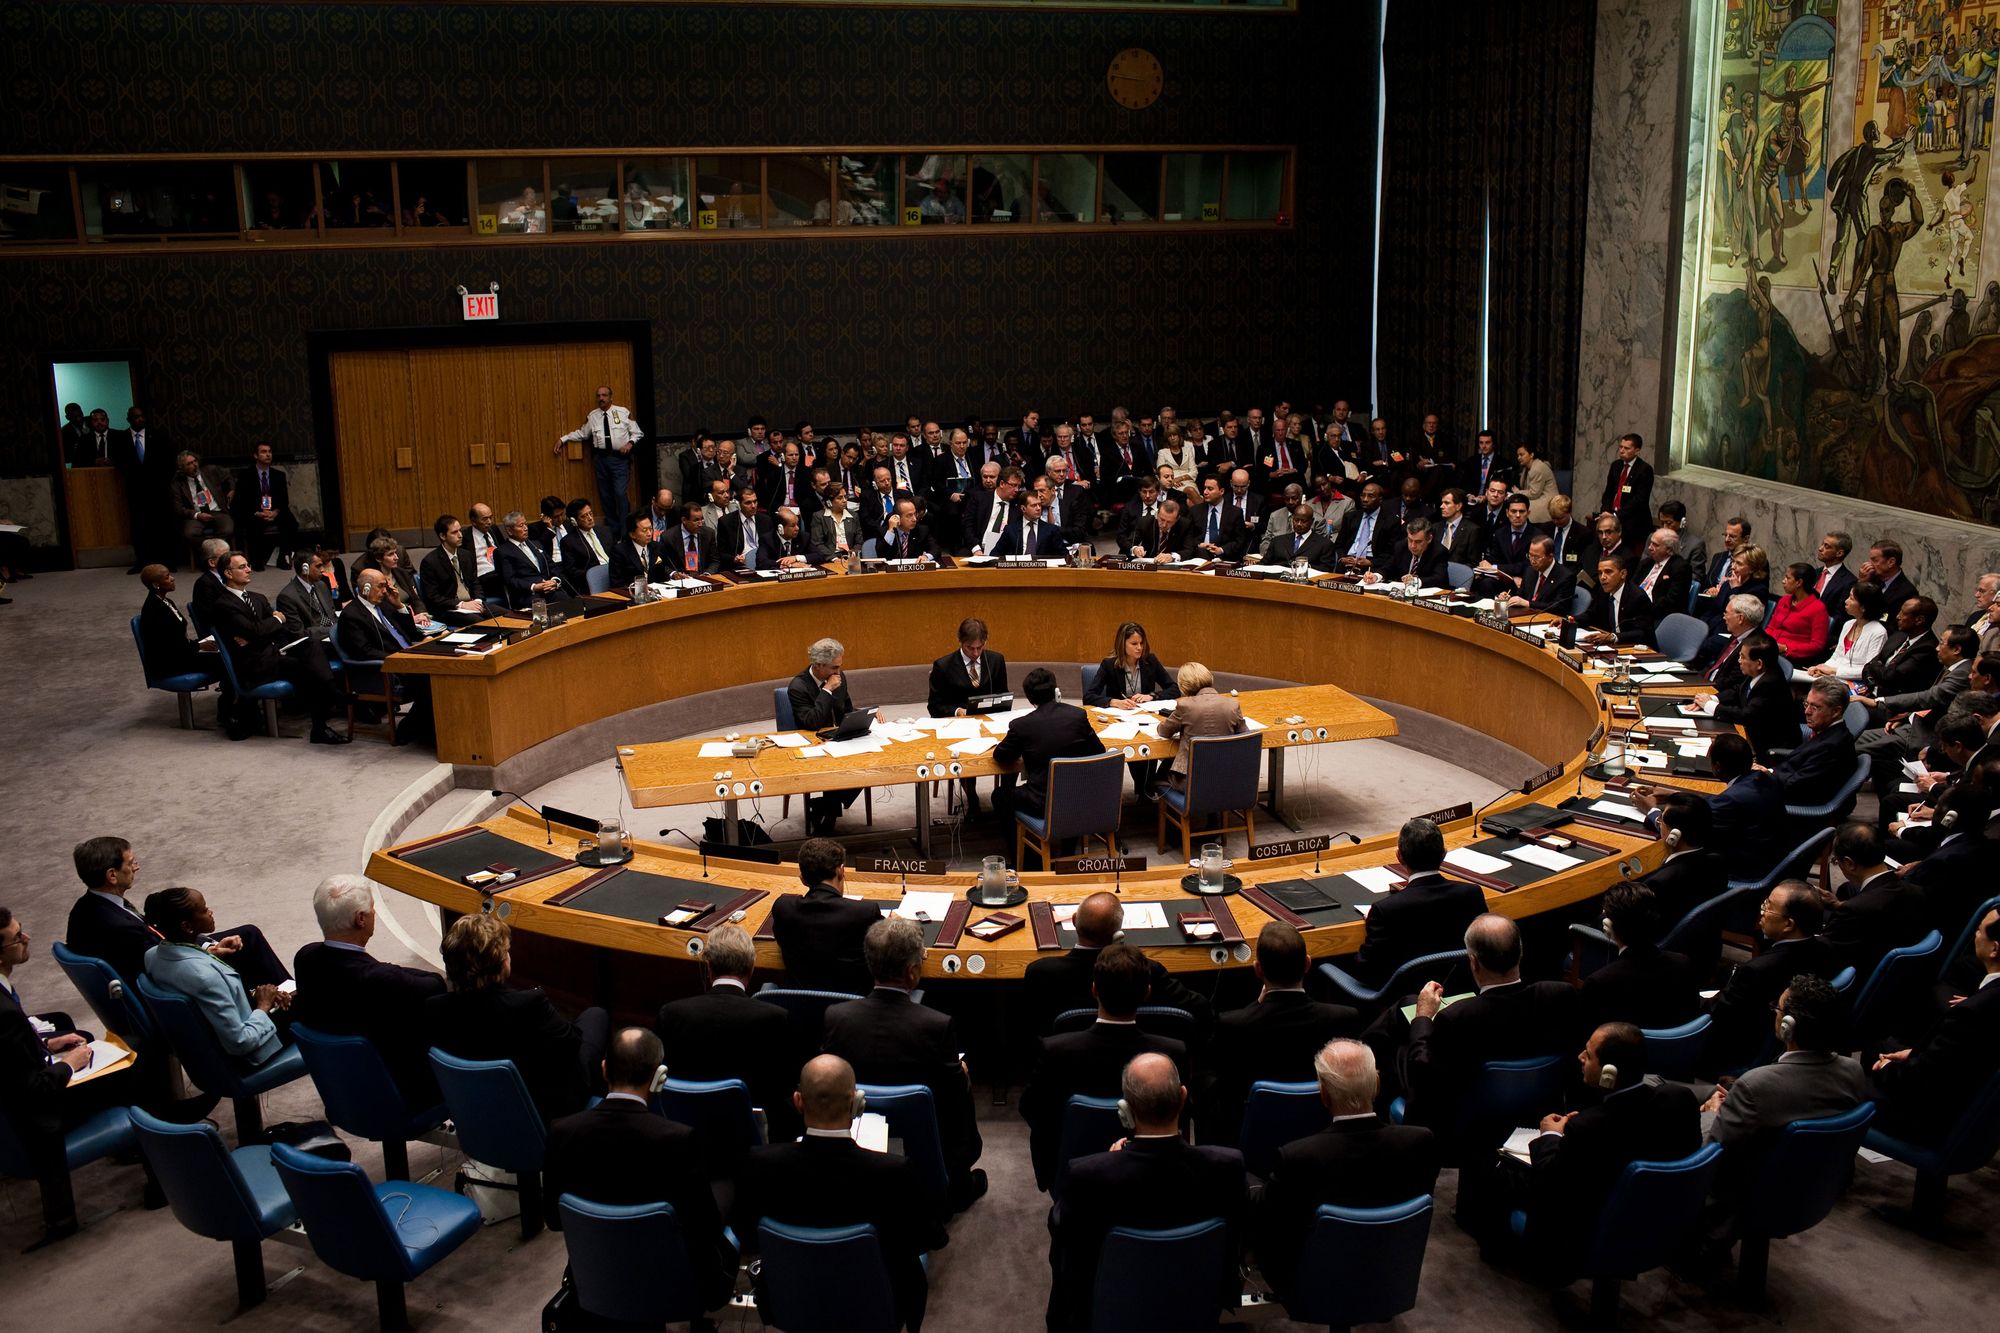 Pakistan fails at UN Security Council on Kashmir yet again!